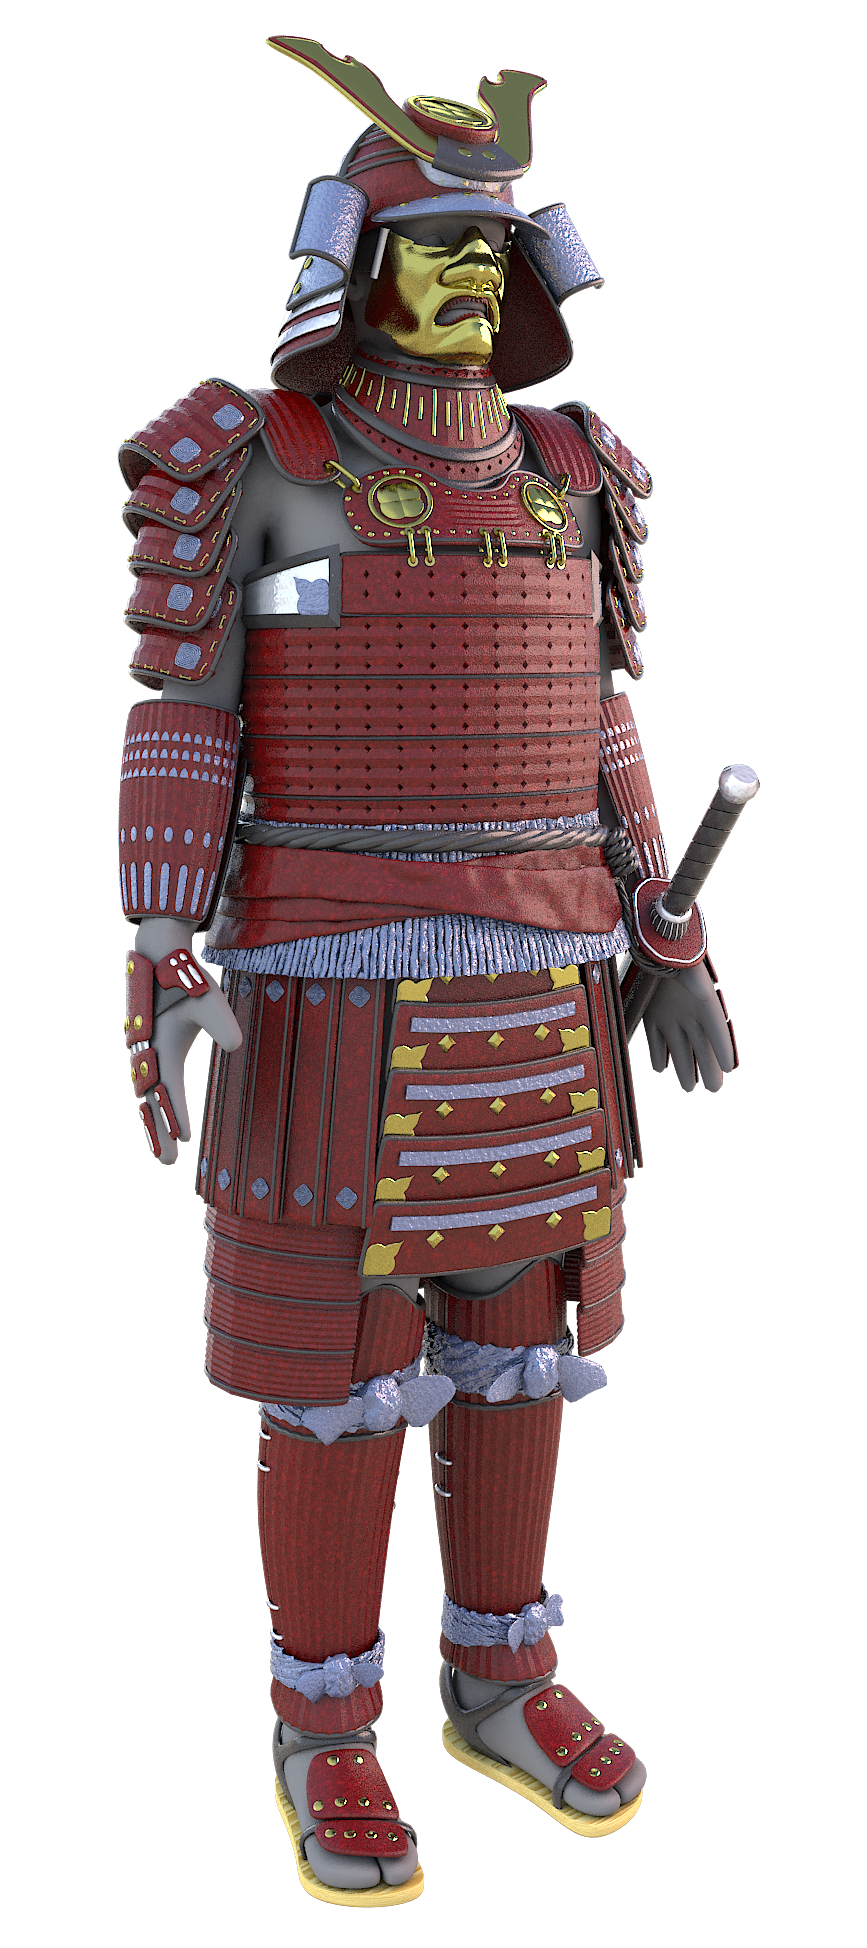 Samurai Armor Samurai Armor Samurai Warrior Ancient Armor